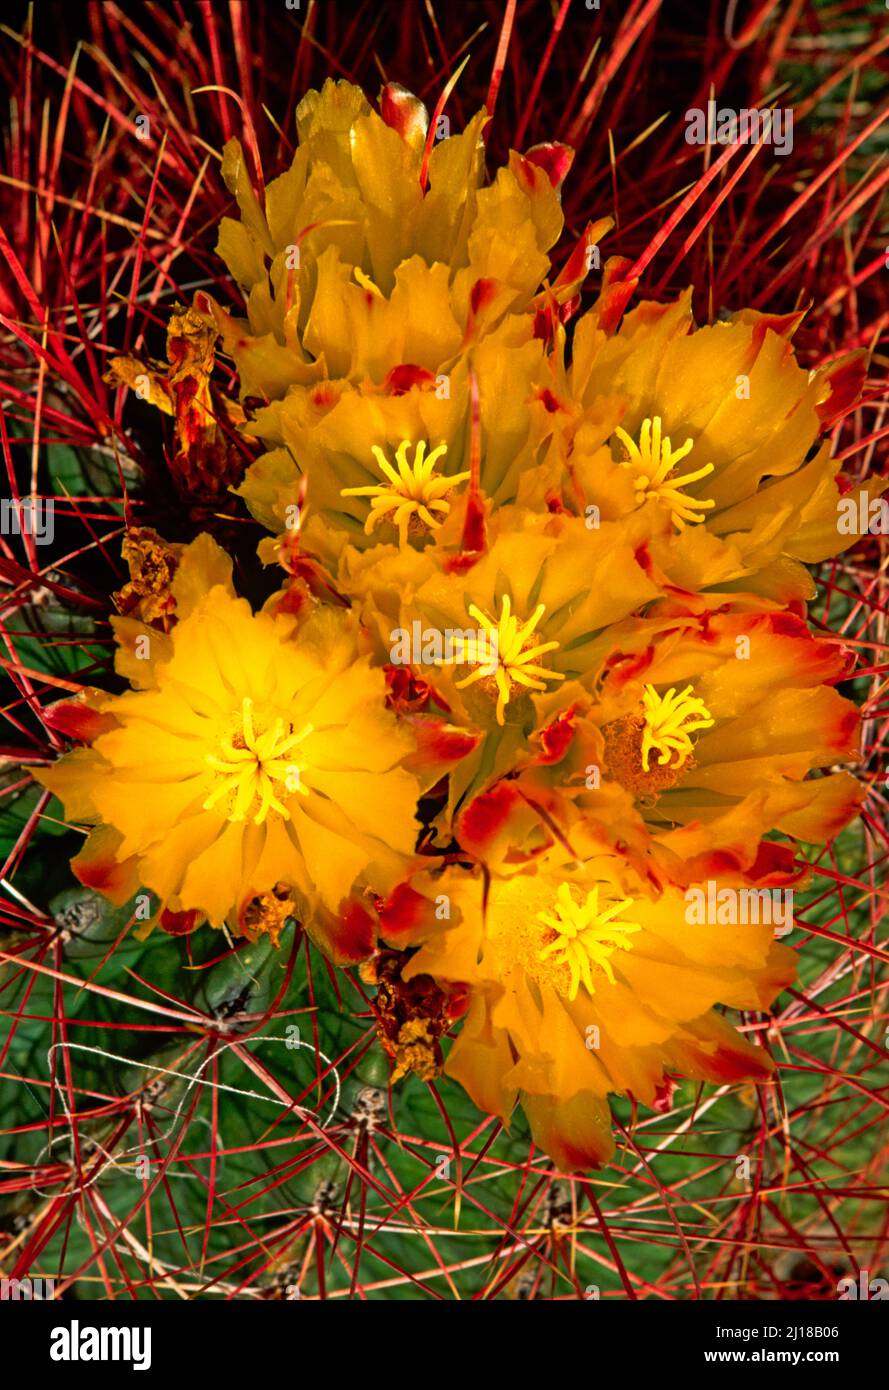 cactus flowers, Stock Photo